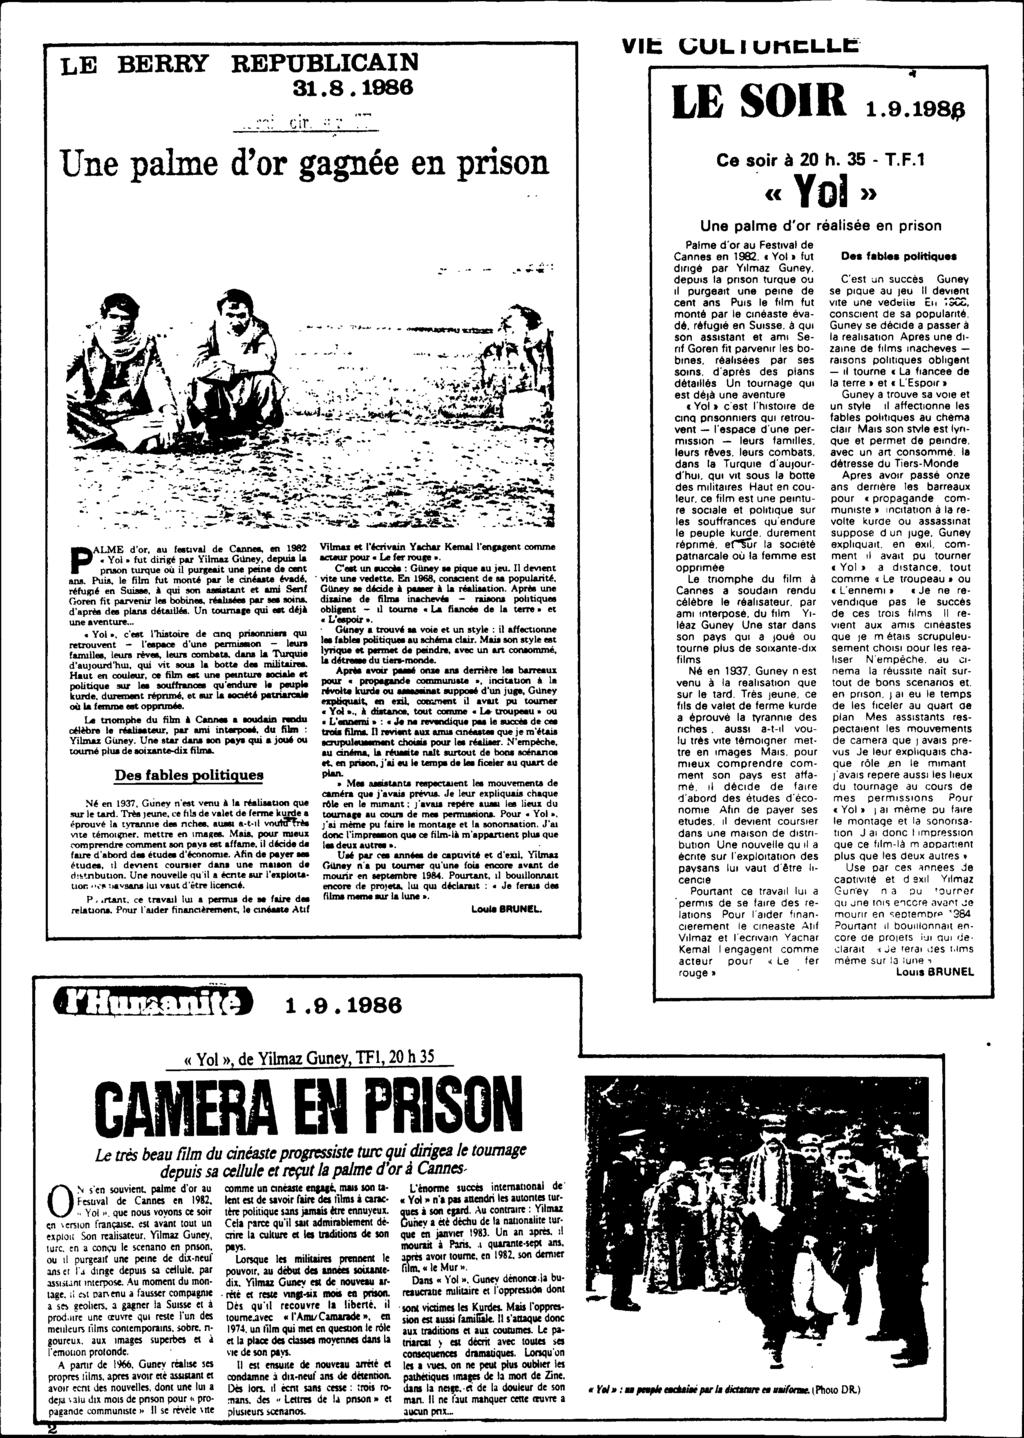 LE BERRY REPUBLICAIN 31.8.1986 Cif, " Une palme d'or gagnée en prison P ALME d'or, au f.. "val de Cannee, en 1982 'loi.